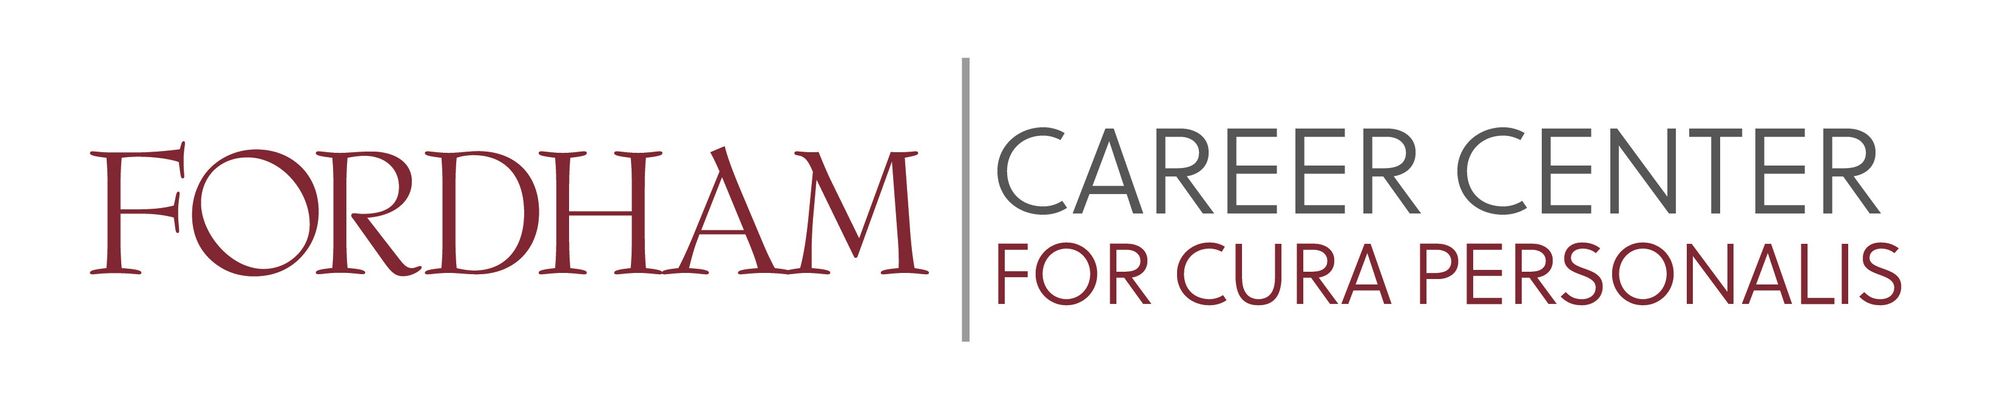 Career Center Logo